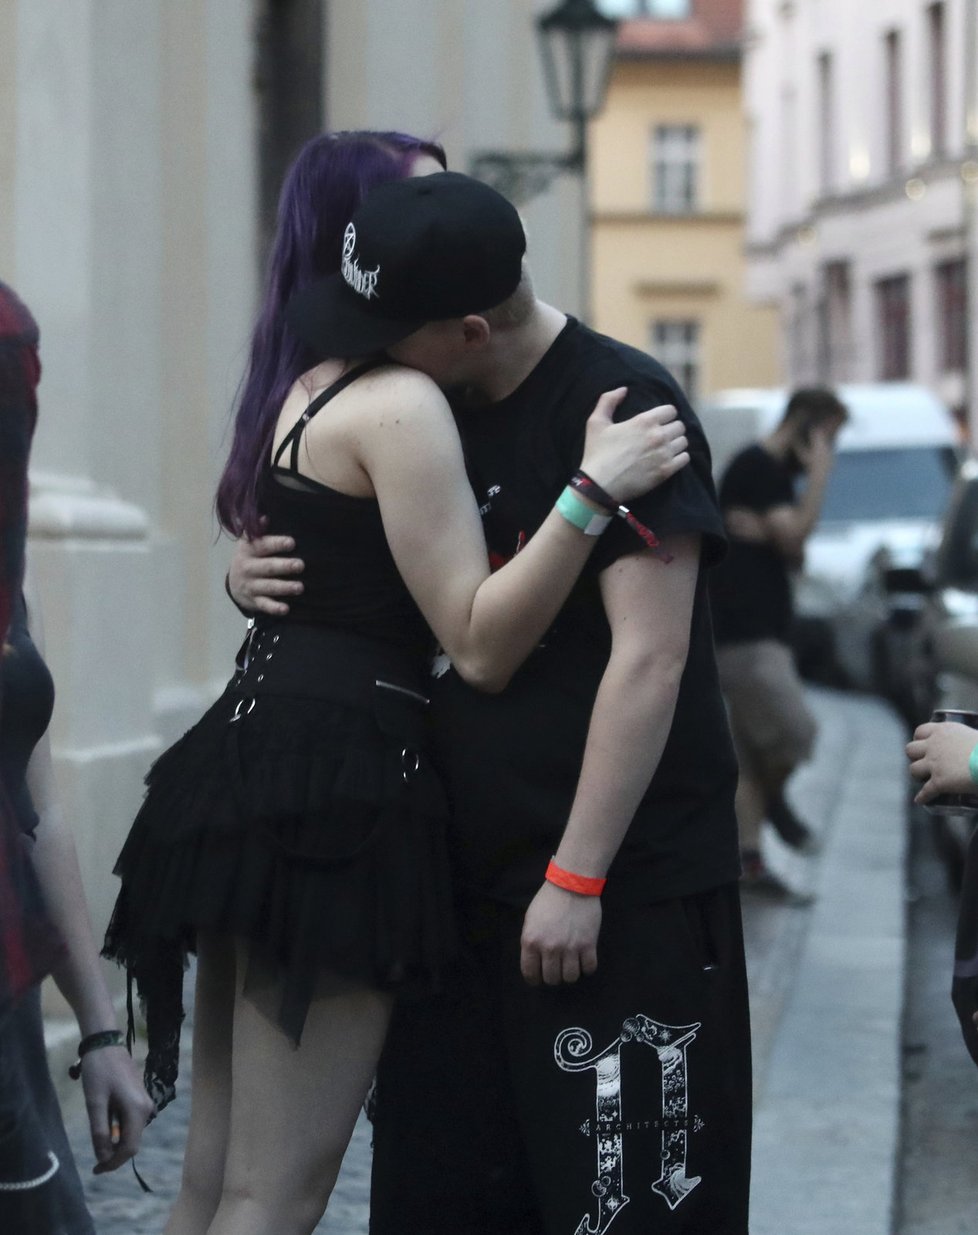 Artur Štaidl svou dívku objímal a líbal na ulici před klubem.